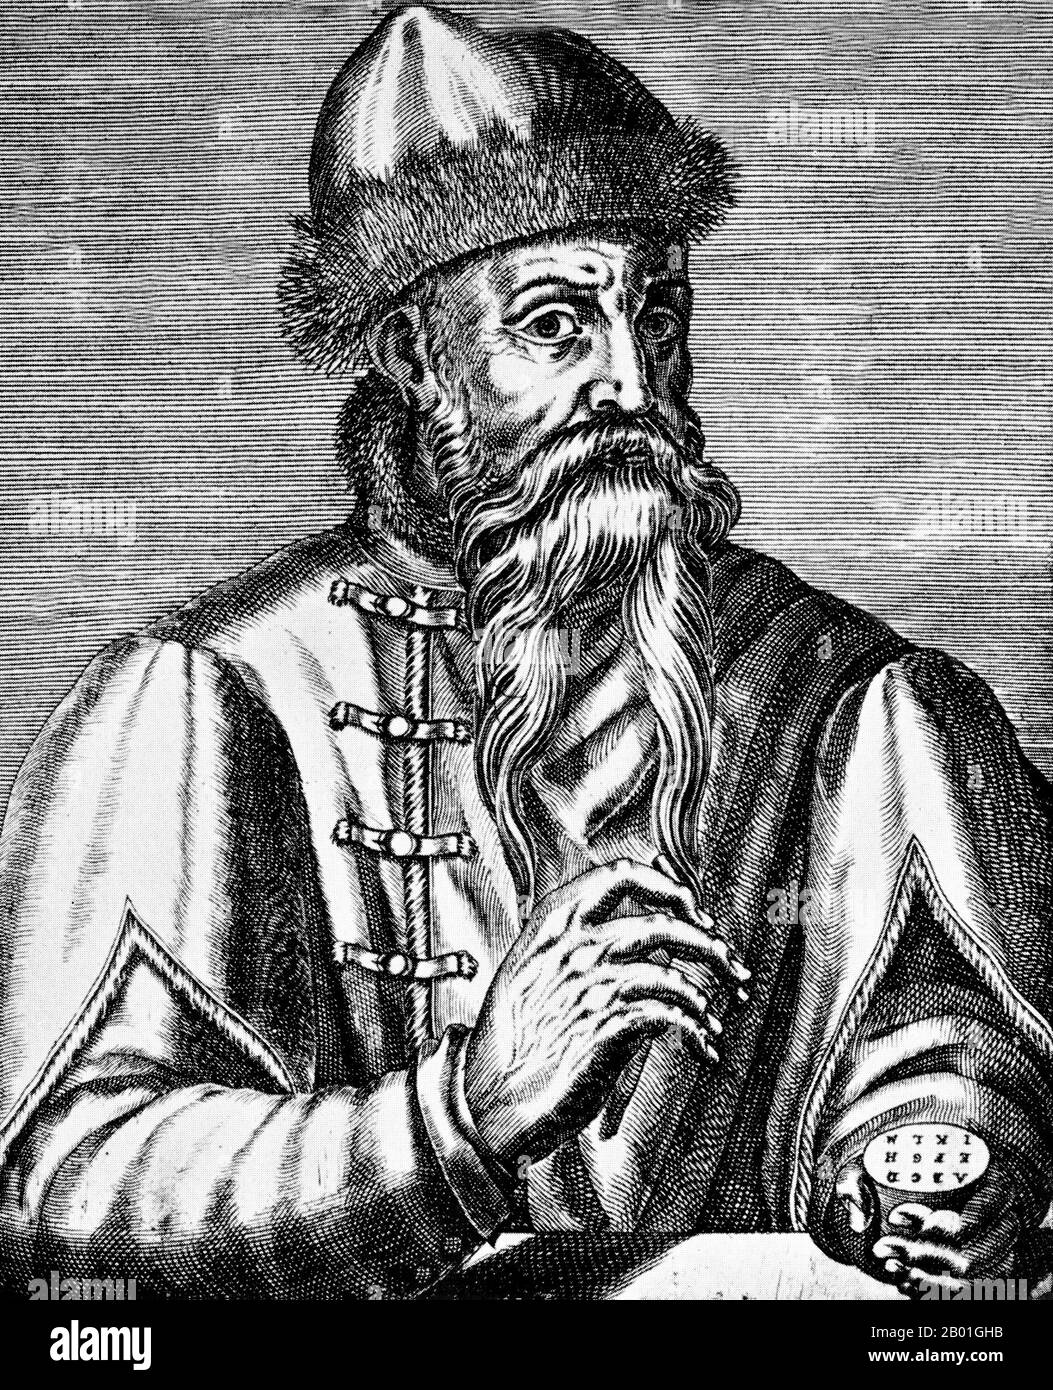 Deutschland: Johannes Gutenberg (ca. 1393.-3. Februar 1468), Drucker und Verleger, der die erste europäische Druckerpresse vorstellte. Gravur von Nicolas de Larmessin (1632-1694), 17. Jahrhundert. Johannes Gensfleisch zur Laden zum Gutenberg war ein Schmied, Goldschmied, Drucker und Verleger, der die Druckerpresse vorstellte. Seine Verwendung des beweglichen Drucks begann die Druckrevolution und gilt weithin als das wichtigste Ereignis der Neuzeit. Sie spielte eine Schlüsselrolle bei der Entwicklung der Renaissance, der Reformation und der wissenschaftlichen Revolution. Stockfoto